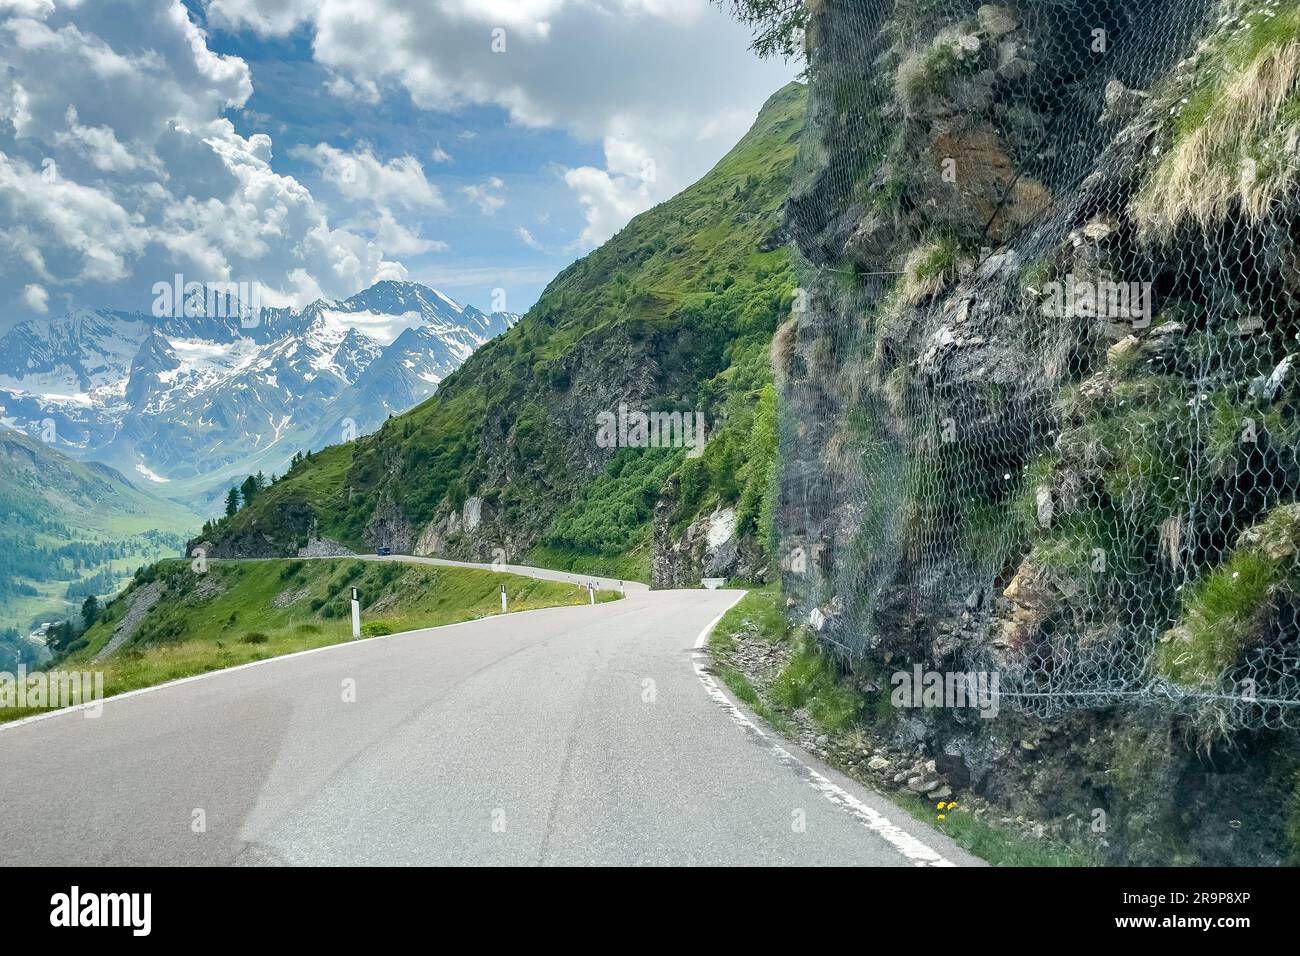 Alpenstraße, rechts mit Maschendraht gegen Steinschlag gesicherte Felswand, Südtirol, Alto Adige, Italien Stockfoto